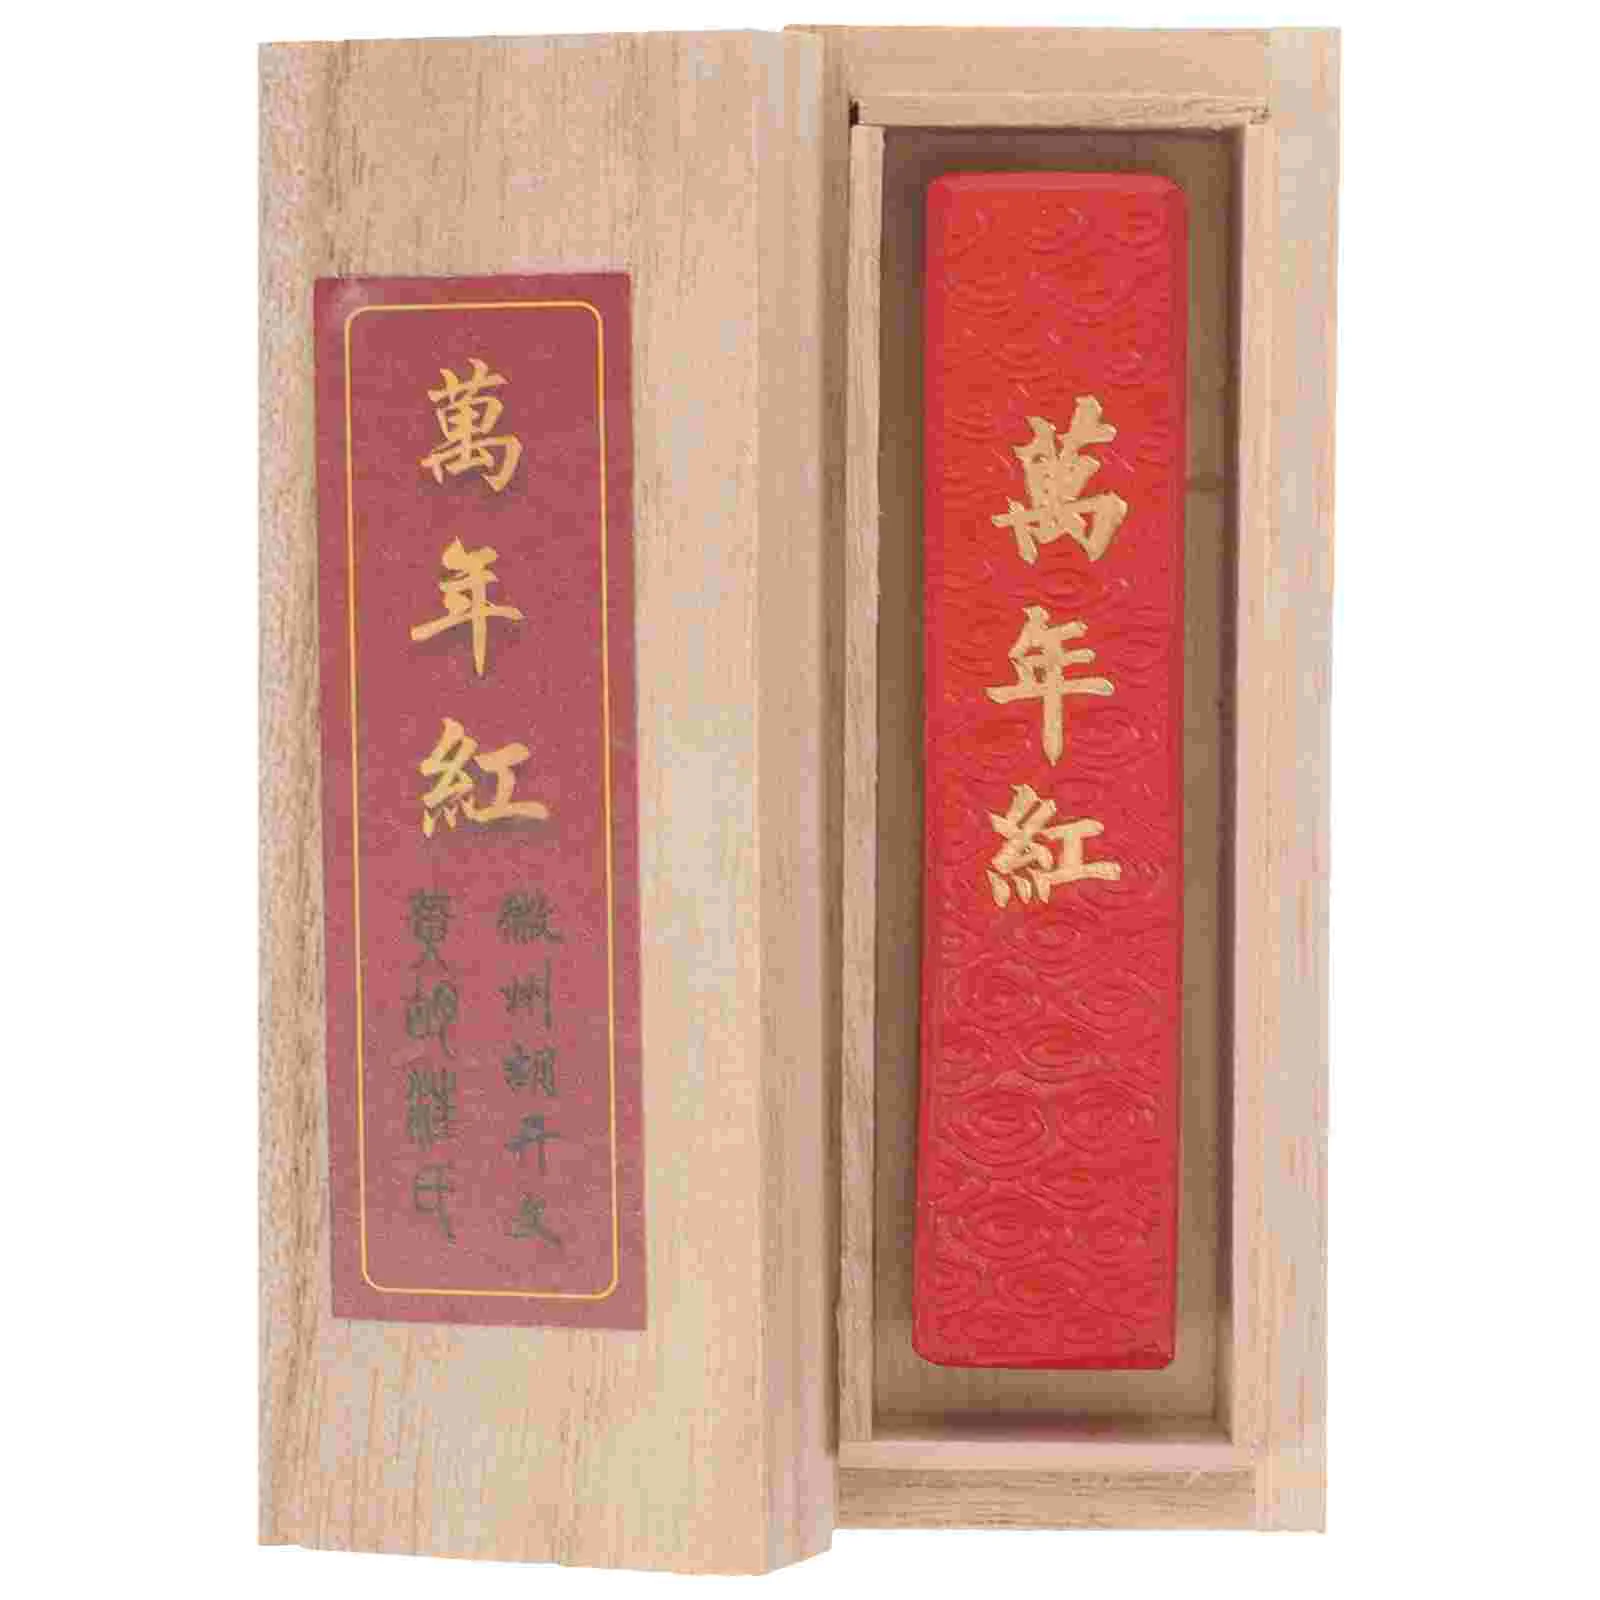 

Десять тысяч лет блок красных чернил для письма шлифовка традиционная ручная работа Китайский рисунок каллиграфия студент